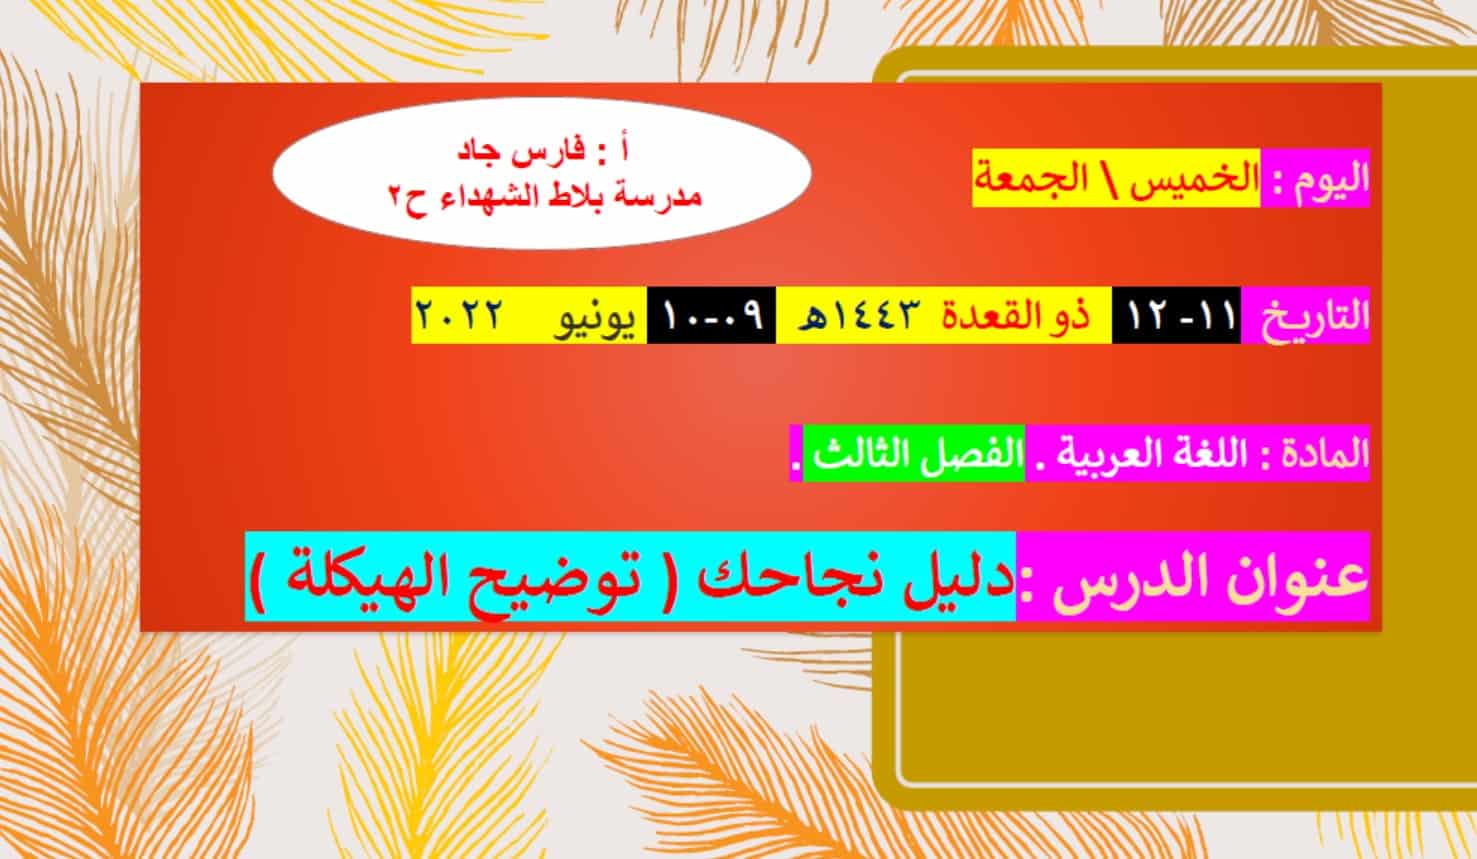 أسئلة هيكل امتحان اللغة العربية الصف الخامس